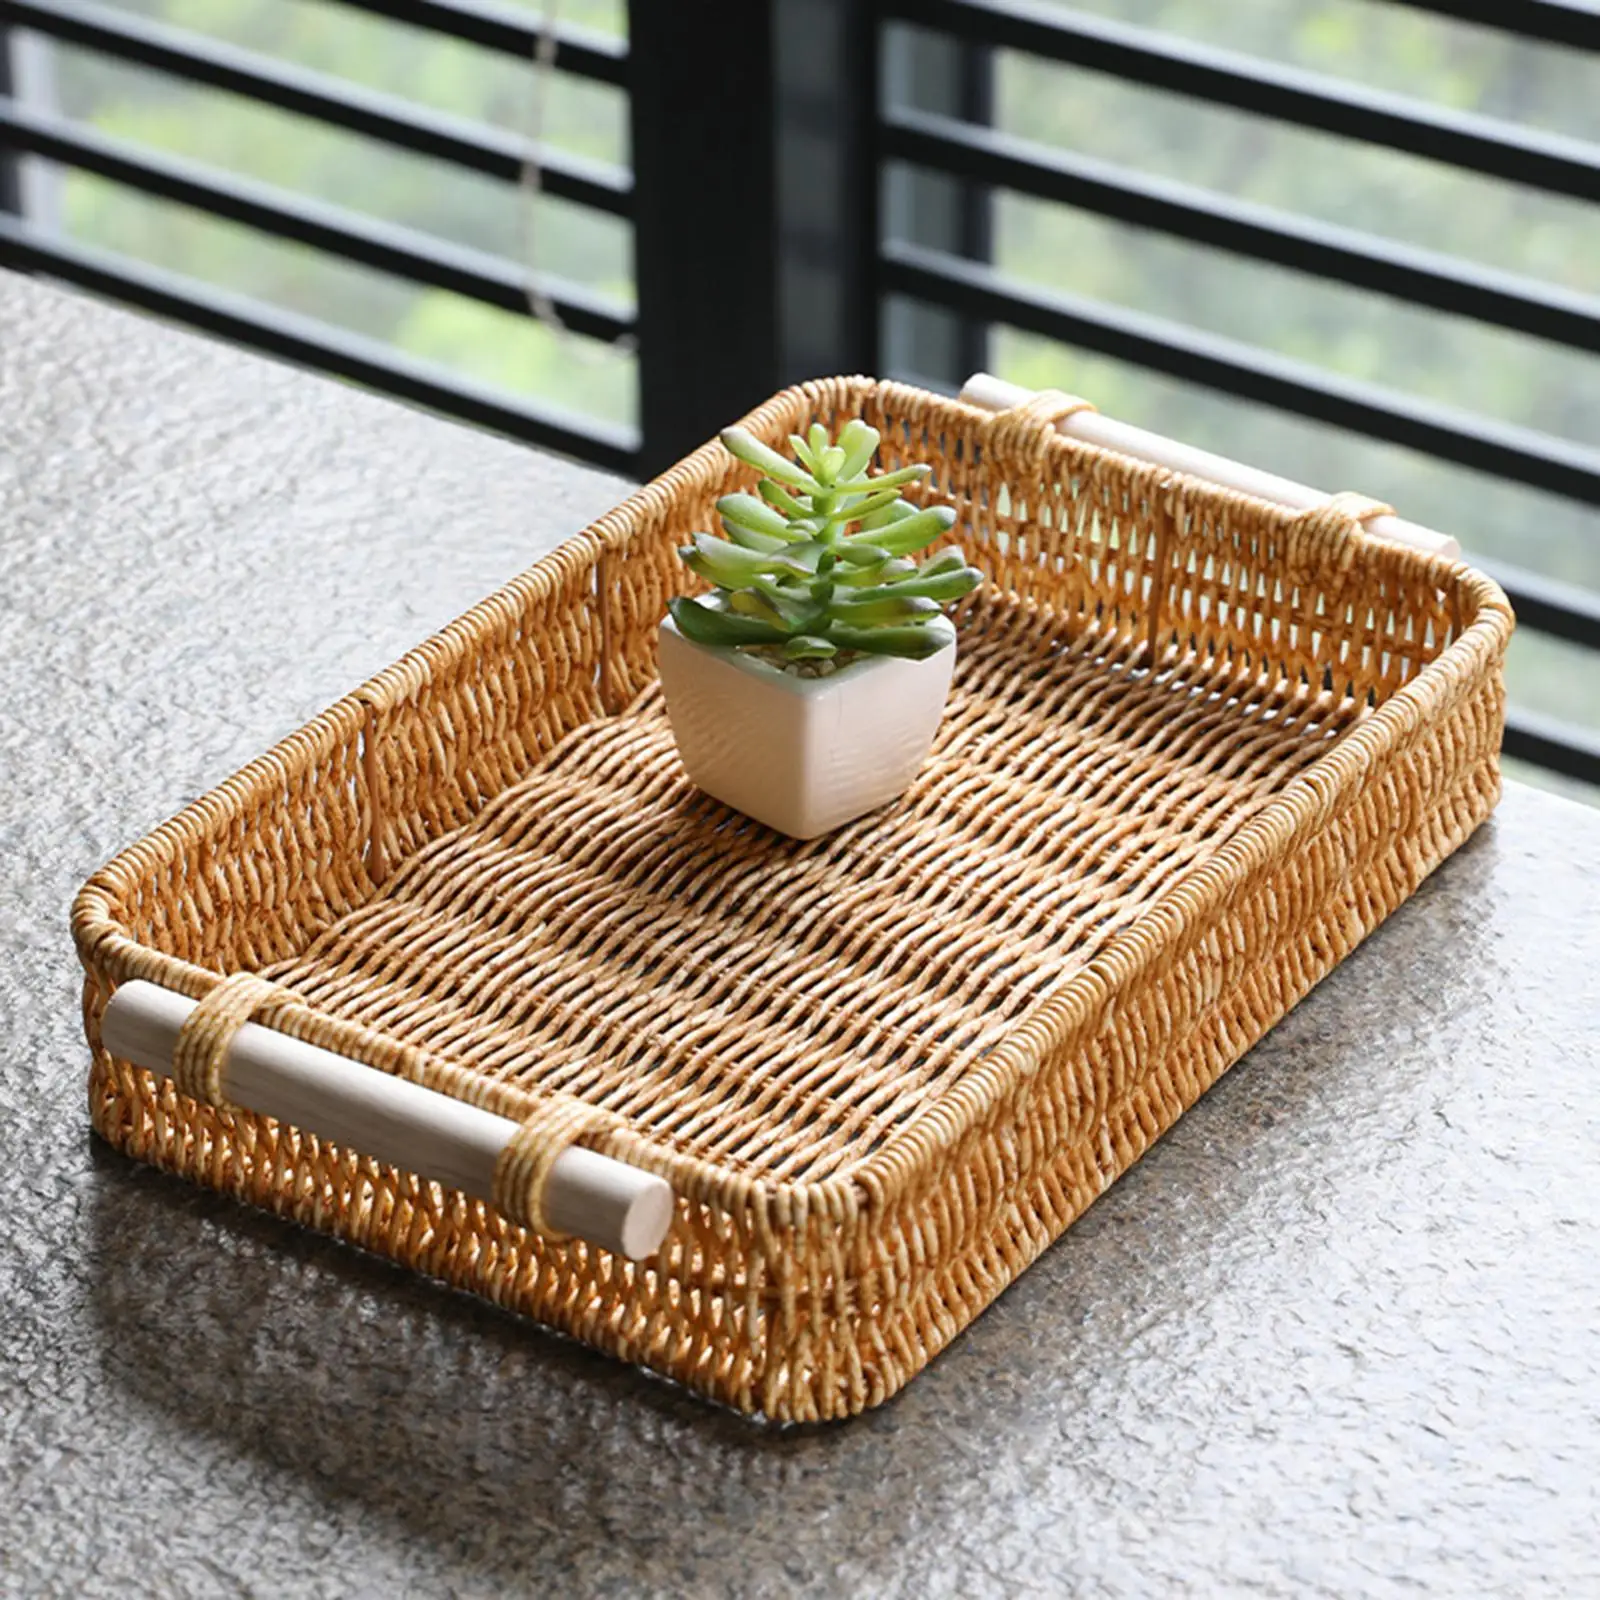  Rattan Weaving Basket, Fruit Baskets Platter, Hand Basket for Desk Bedroom Living Room Home